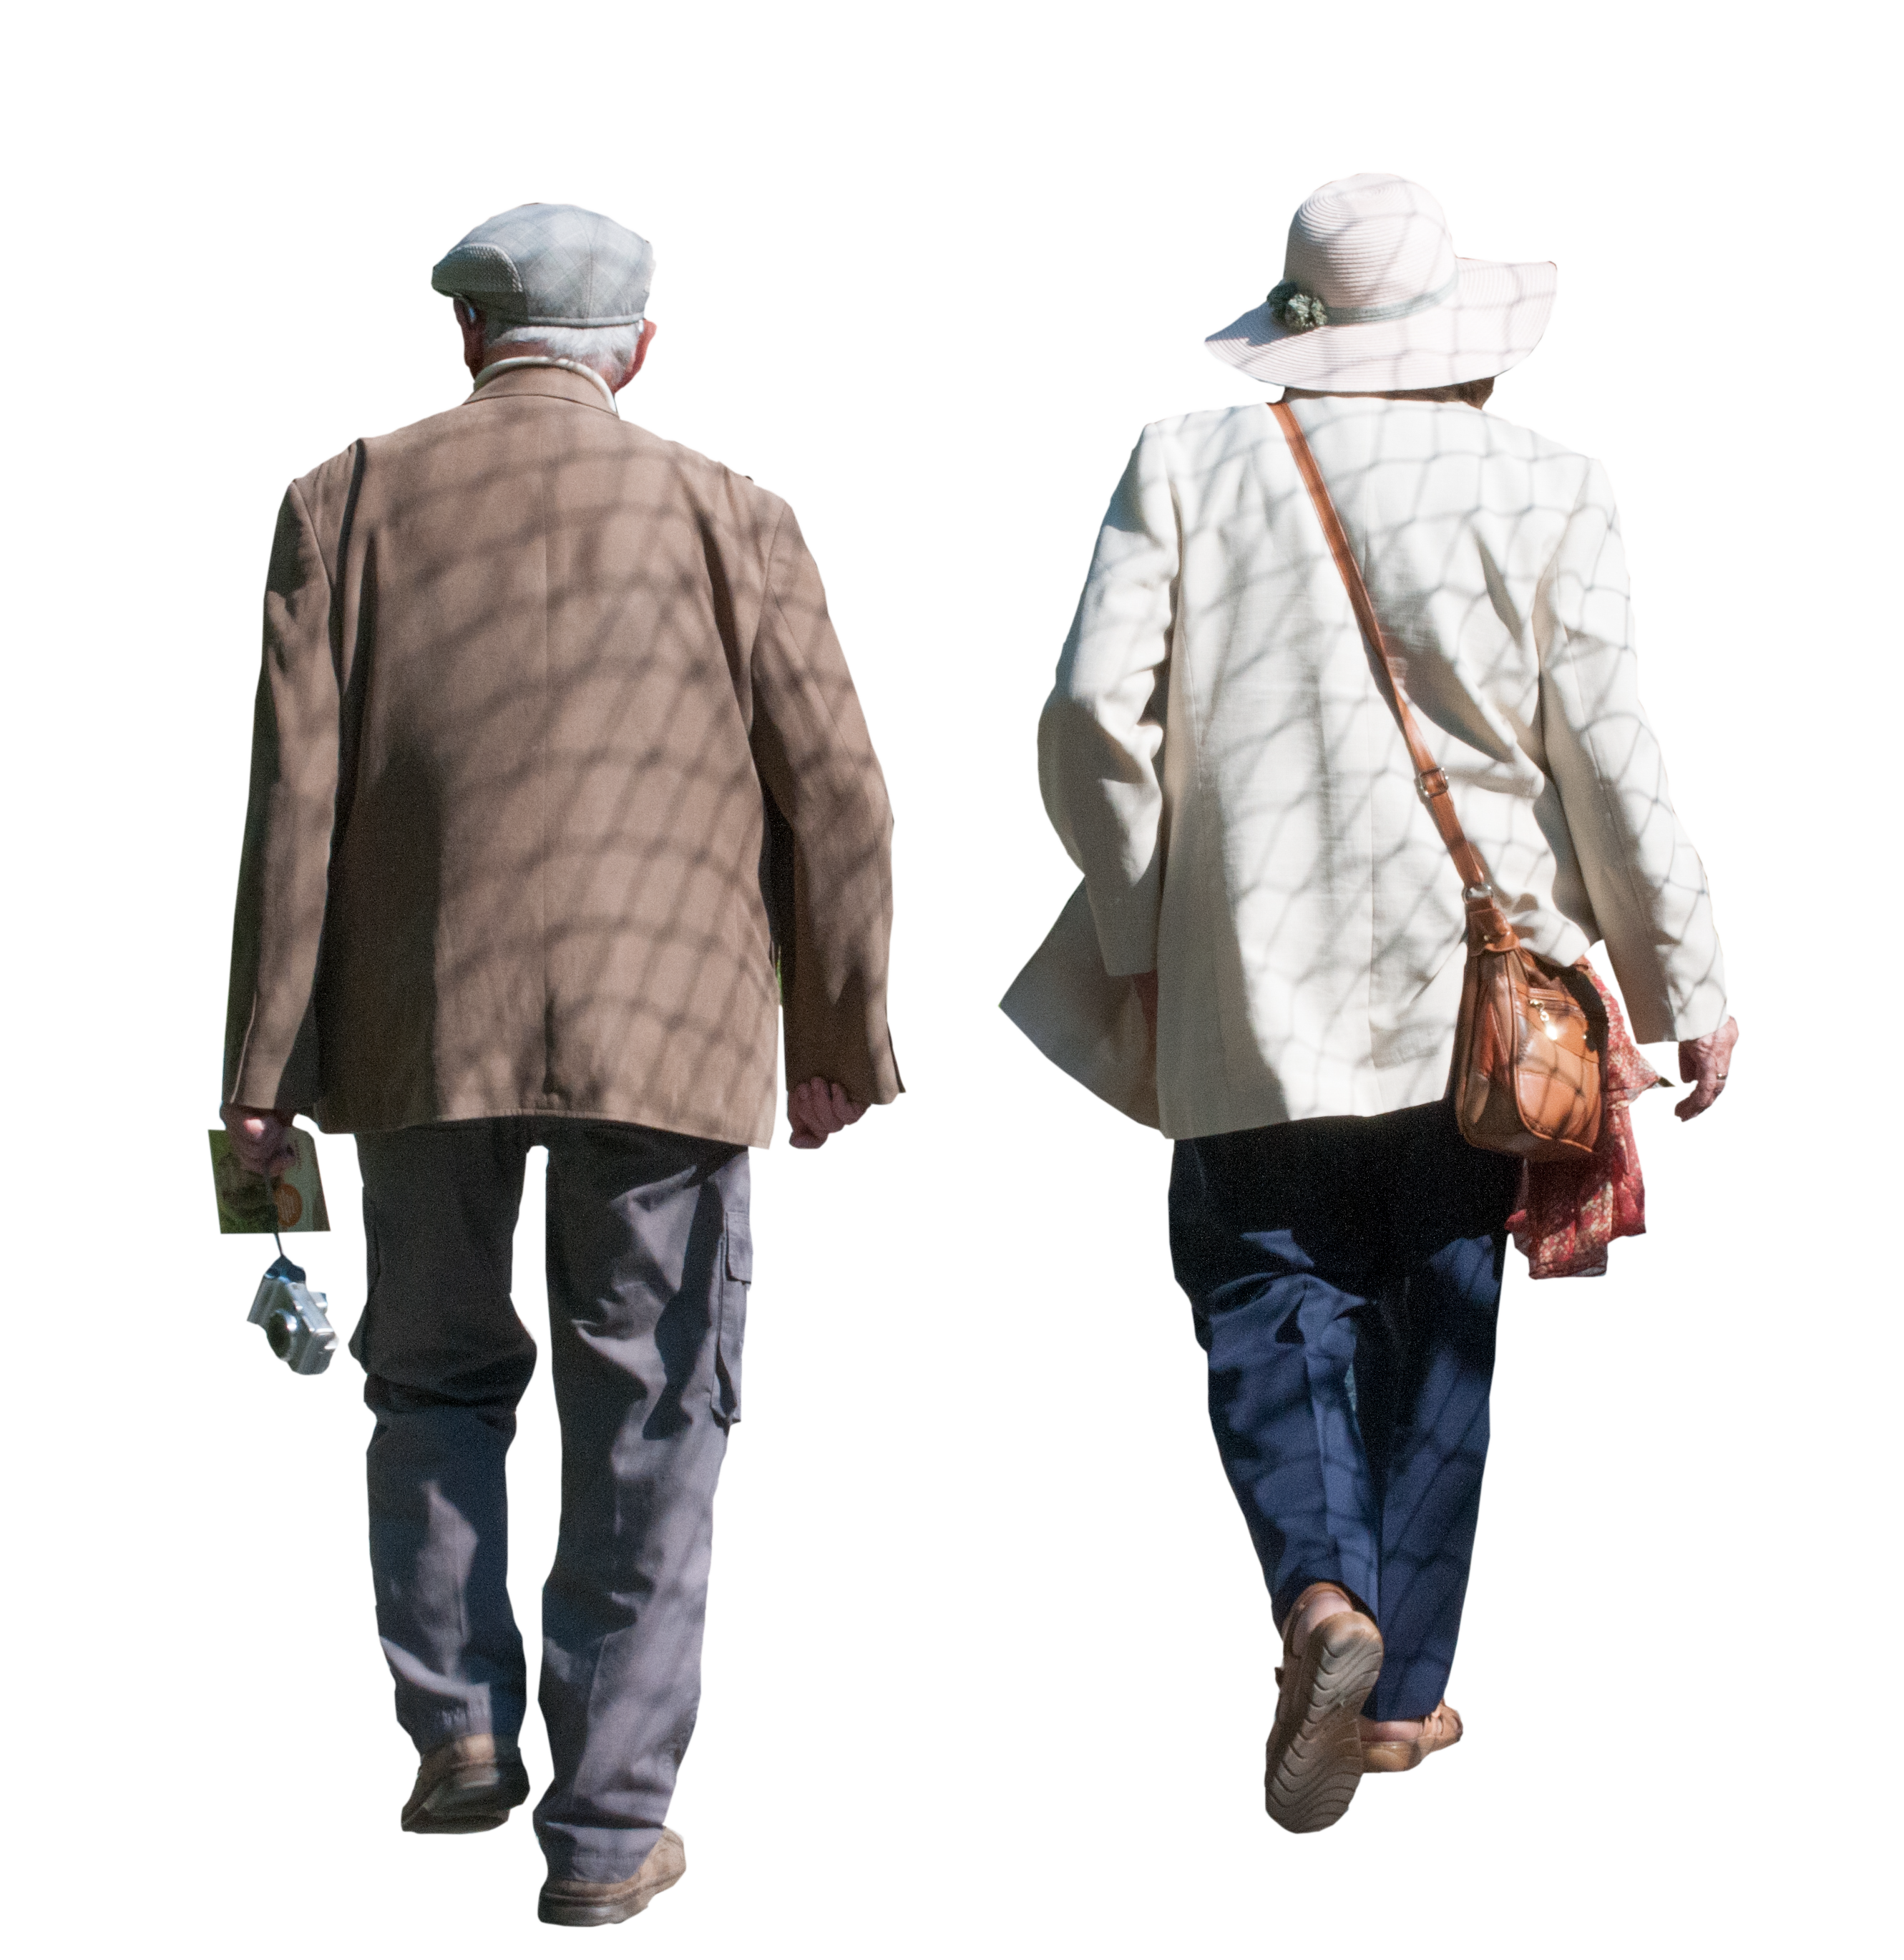 Lancez vous avec Aidette qui favorise le maintien de l' autonomie des personnes âgées